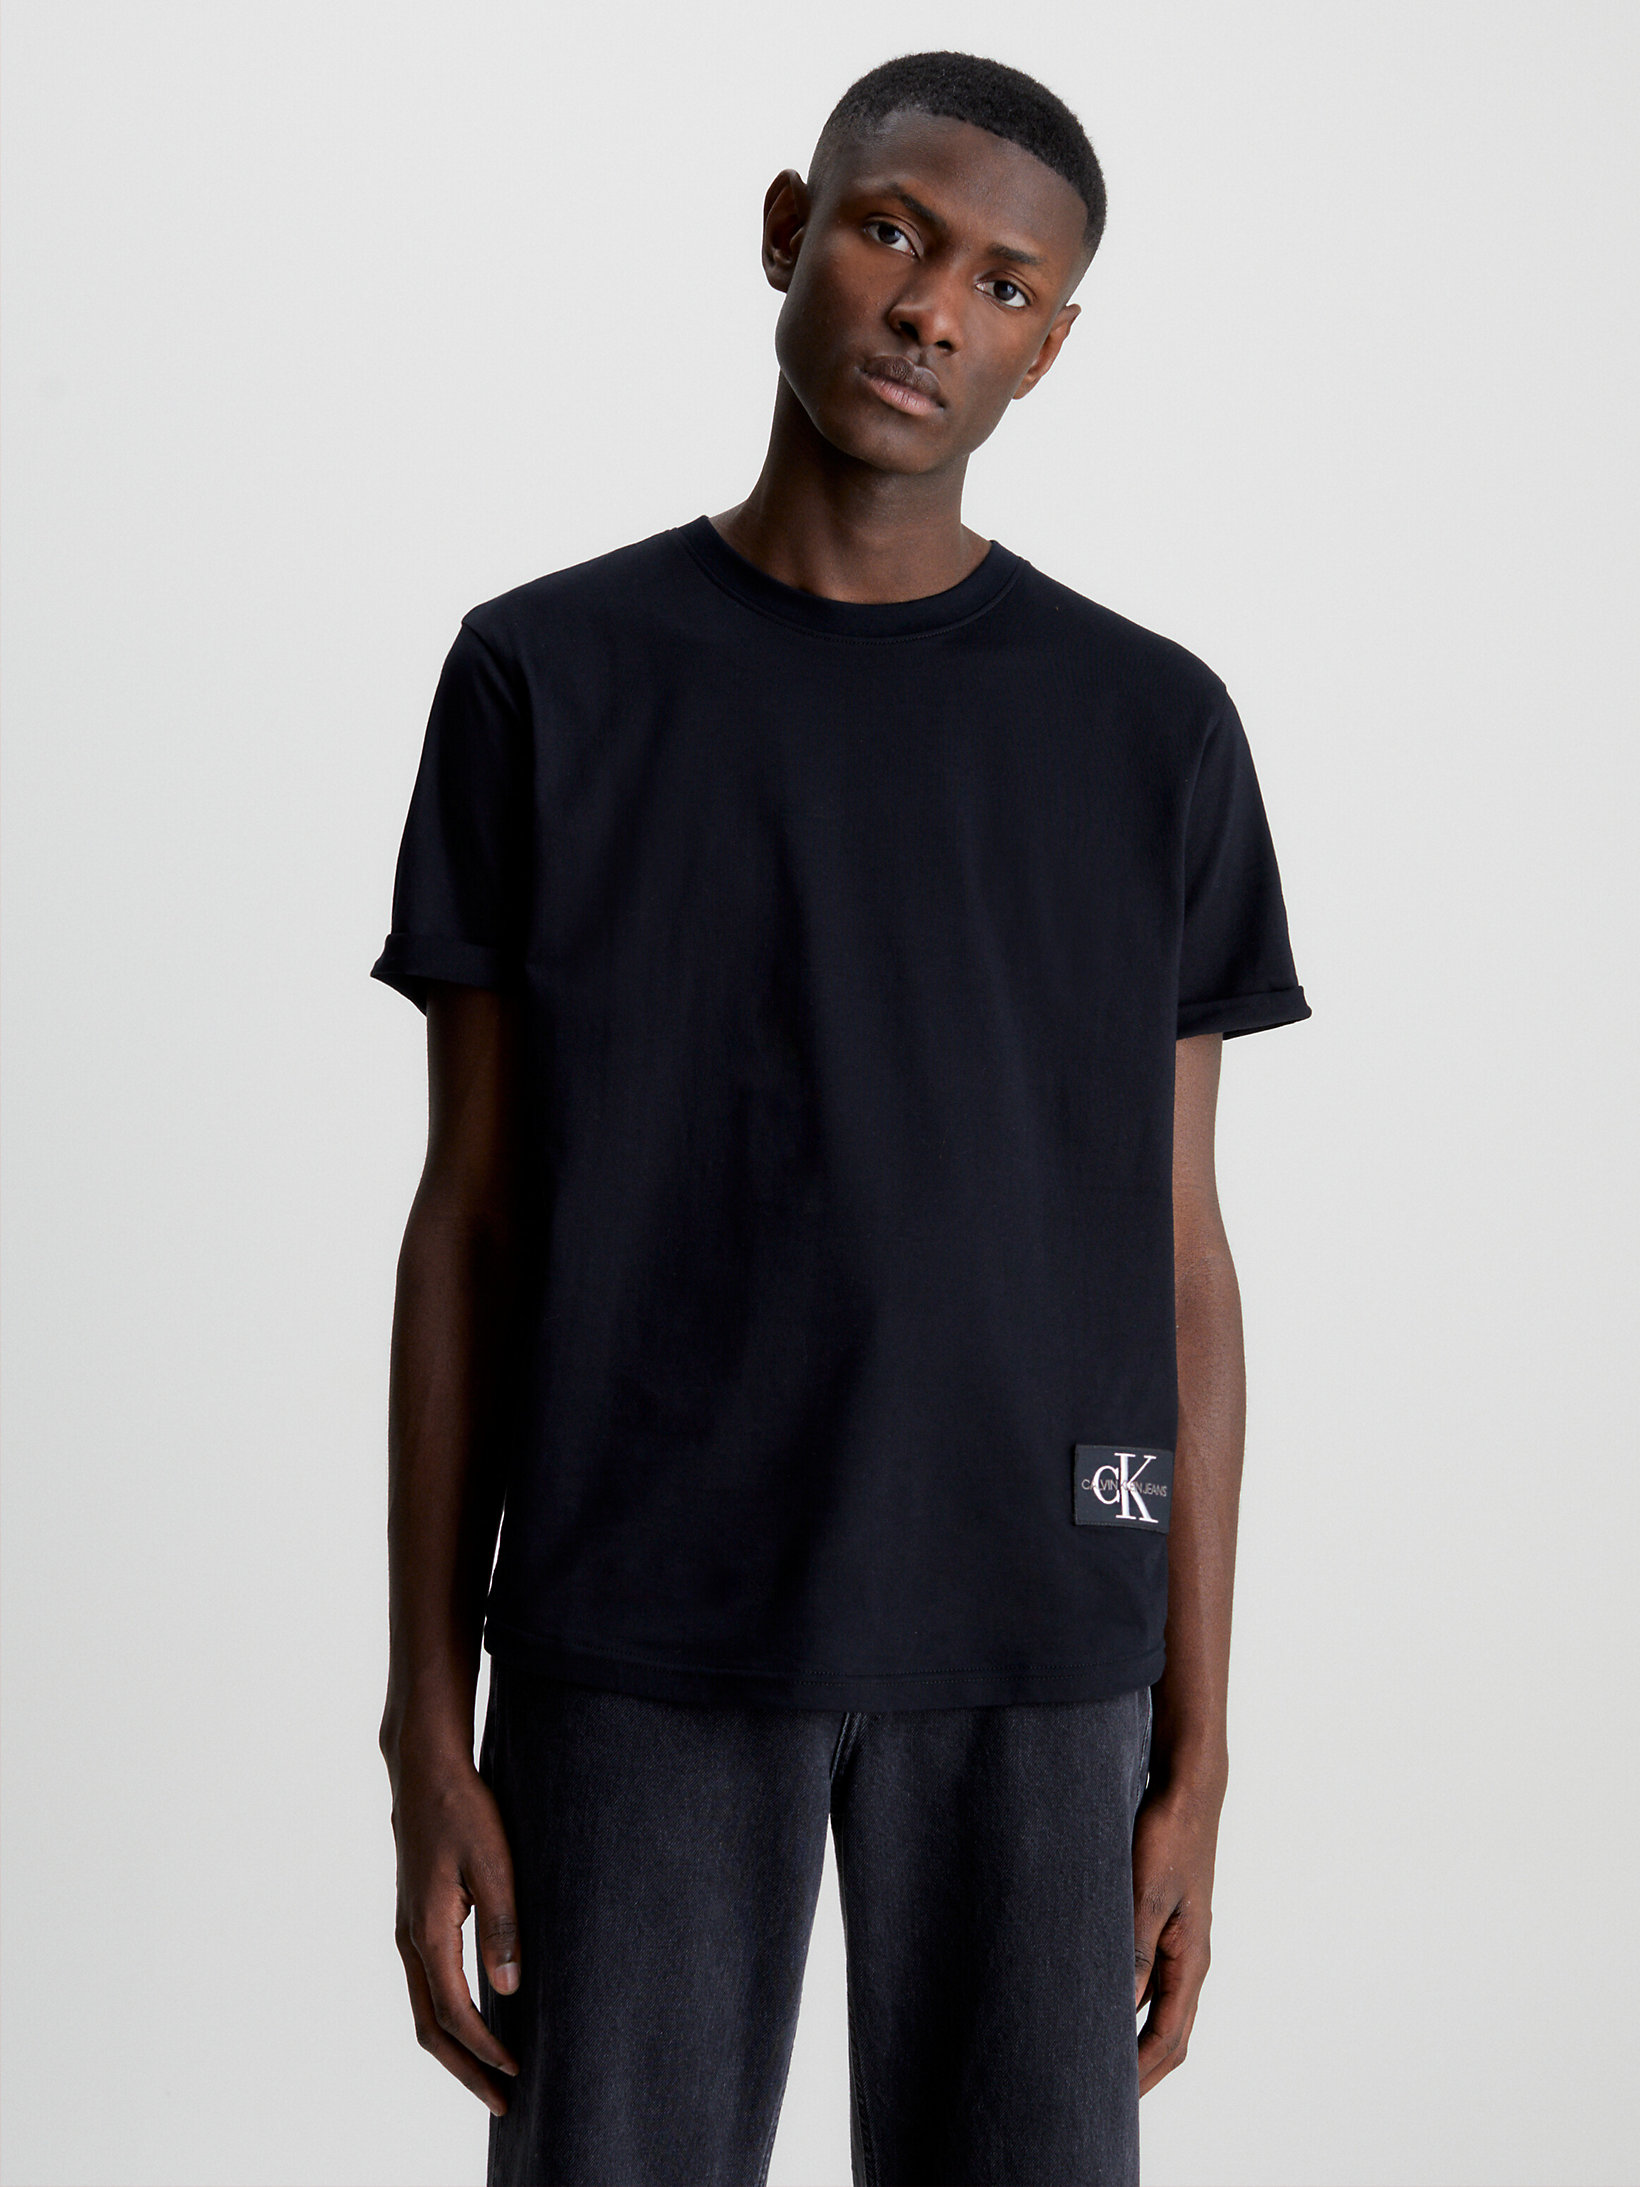 T-Shirt En Coton Bio Avec Insigne > CK Black > undefined hommes > Calvin Klein